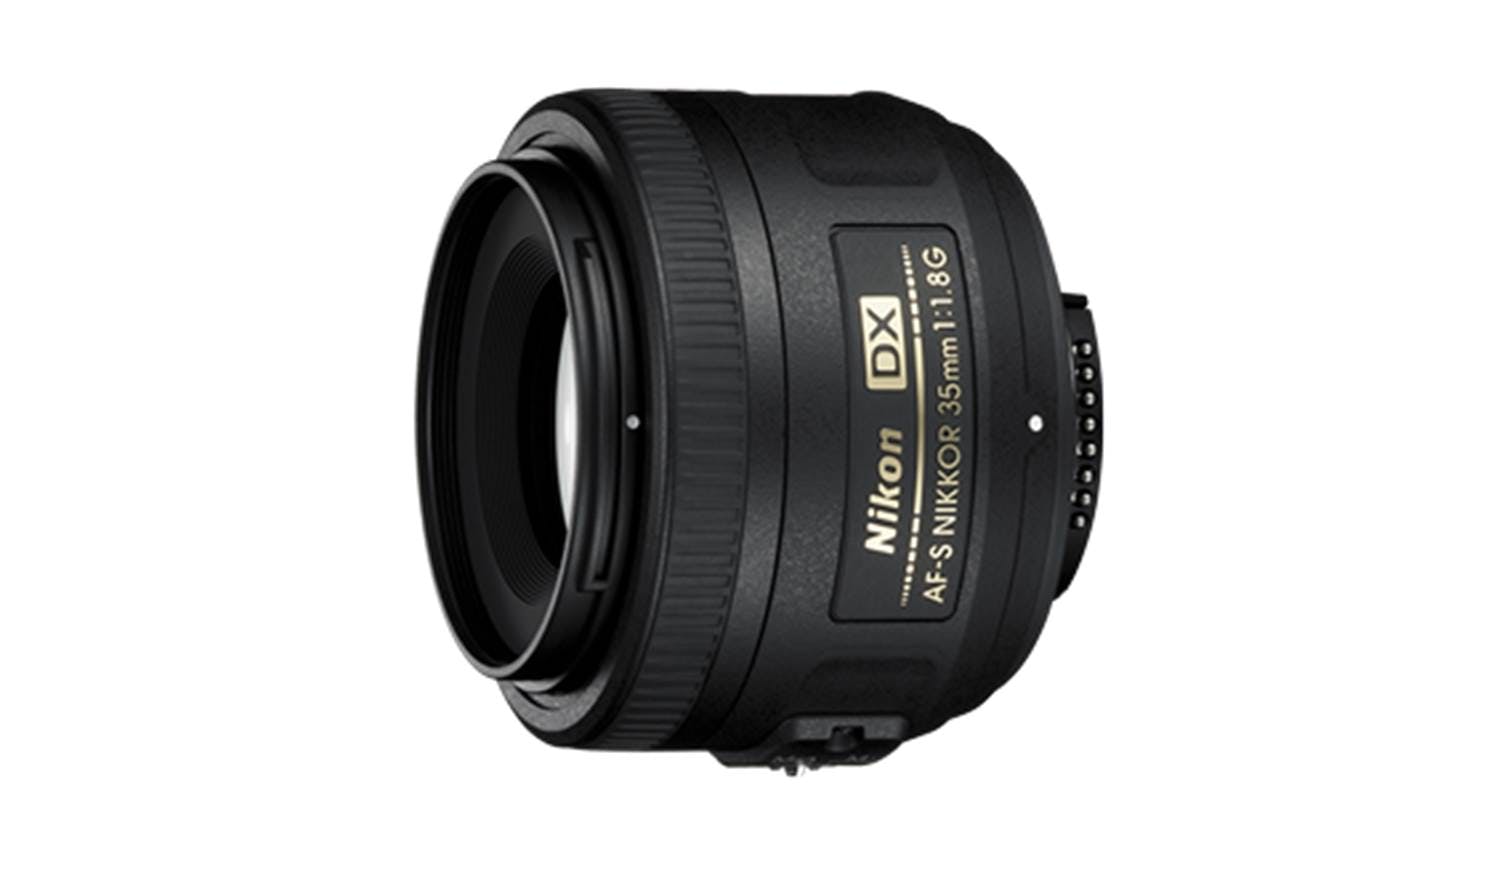 nikon 35mm f1 8g af s dx lens review